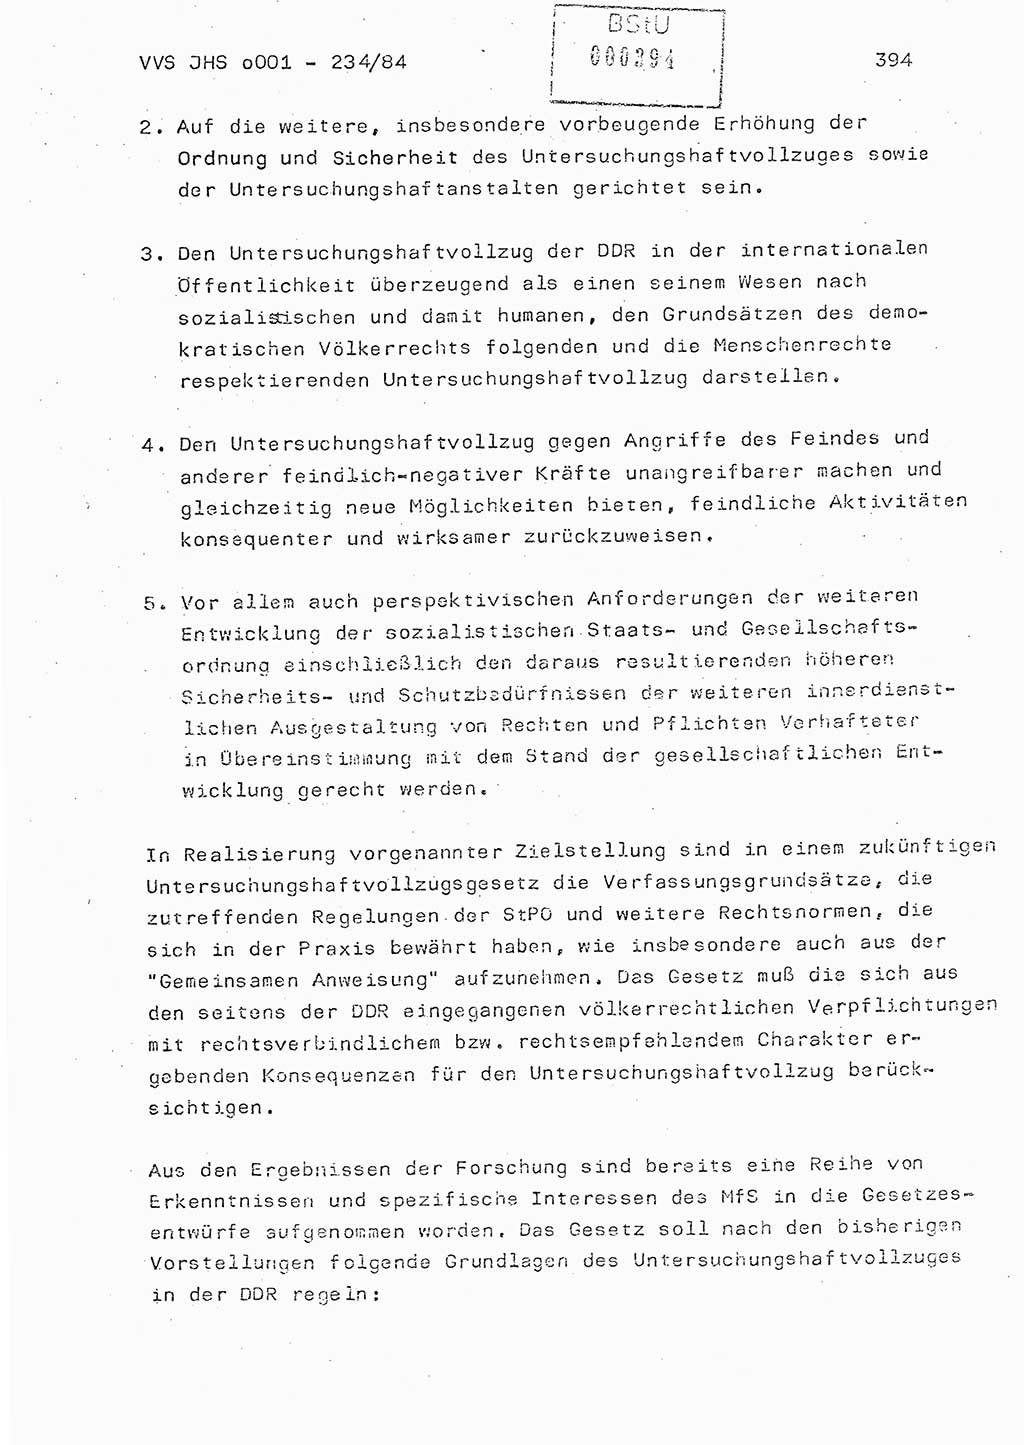 Dissertation Oberst Siegfried Rataizick (Abt. ⅩⅣ), Oberstleutnant Volkmar Heinz (Abt. ⅩⅣ), Oberstleutnant Werner Stein (HA Ⅸ), Hauptmann Heinz Conrad (JHS), Ministerium für Staatssicherheit (MfS) [Deutsche Demokratische Republik (DDR)], Juristische Hochschule (JHS), Vertrauliche Verschlußsache (VVS) o001-234/84, Potsdam 1984, Seite 394 (Diss. MfS DDR JHS VVS o001-234/84 1984, S. 394)